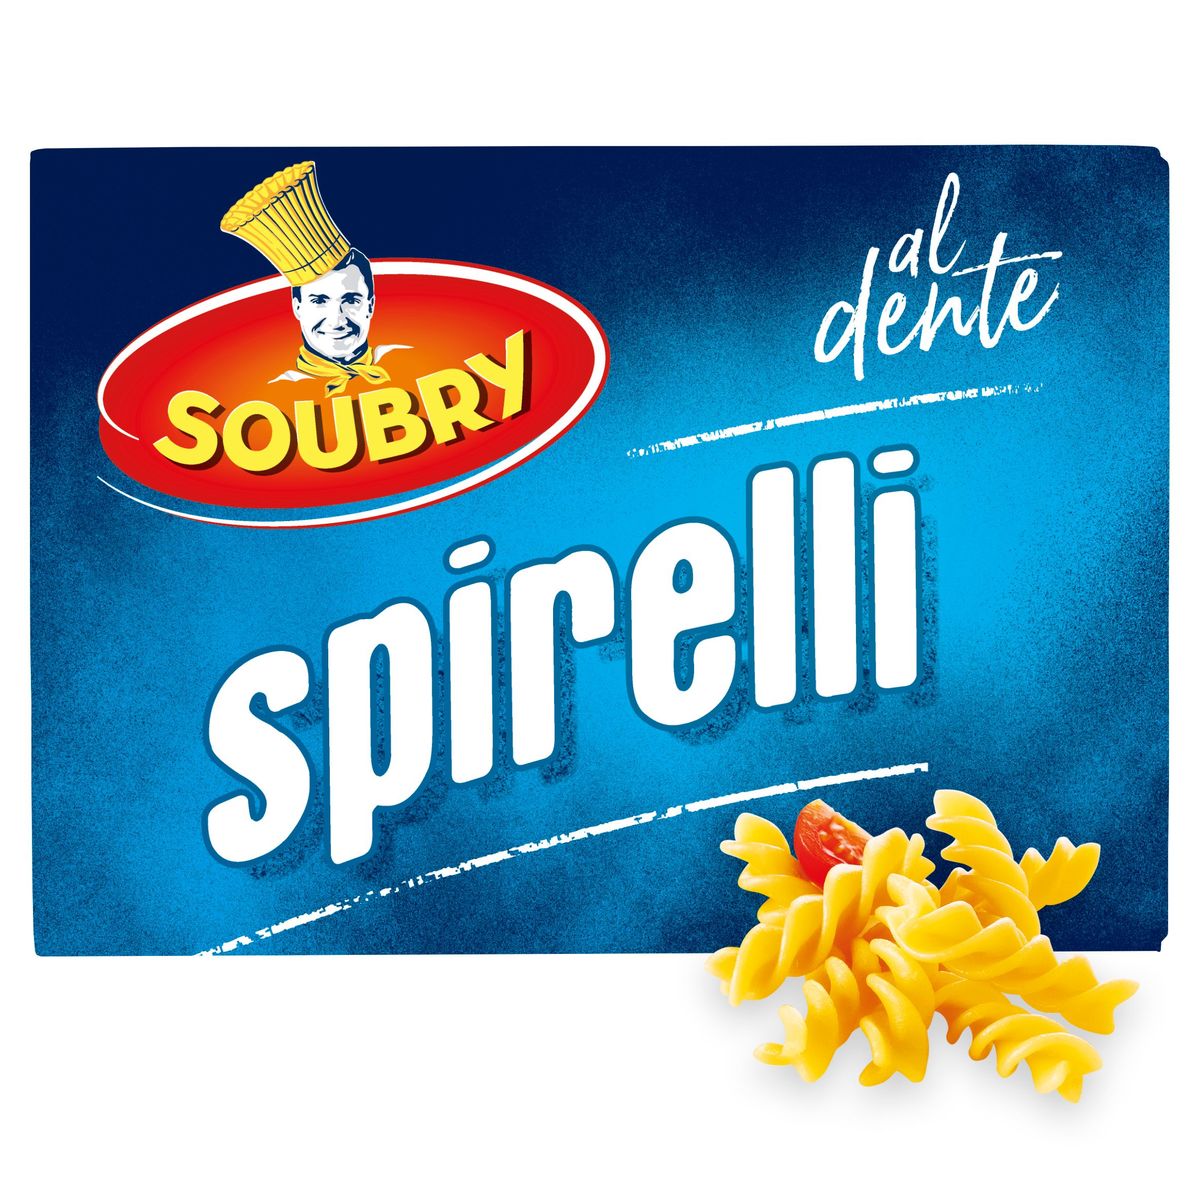 Soubry Pasta Spirelli 375g